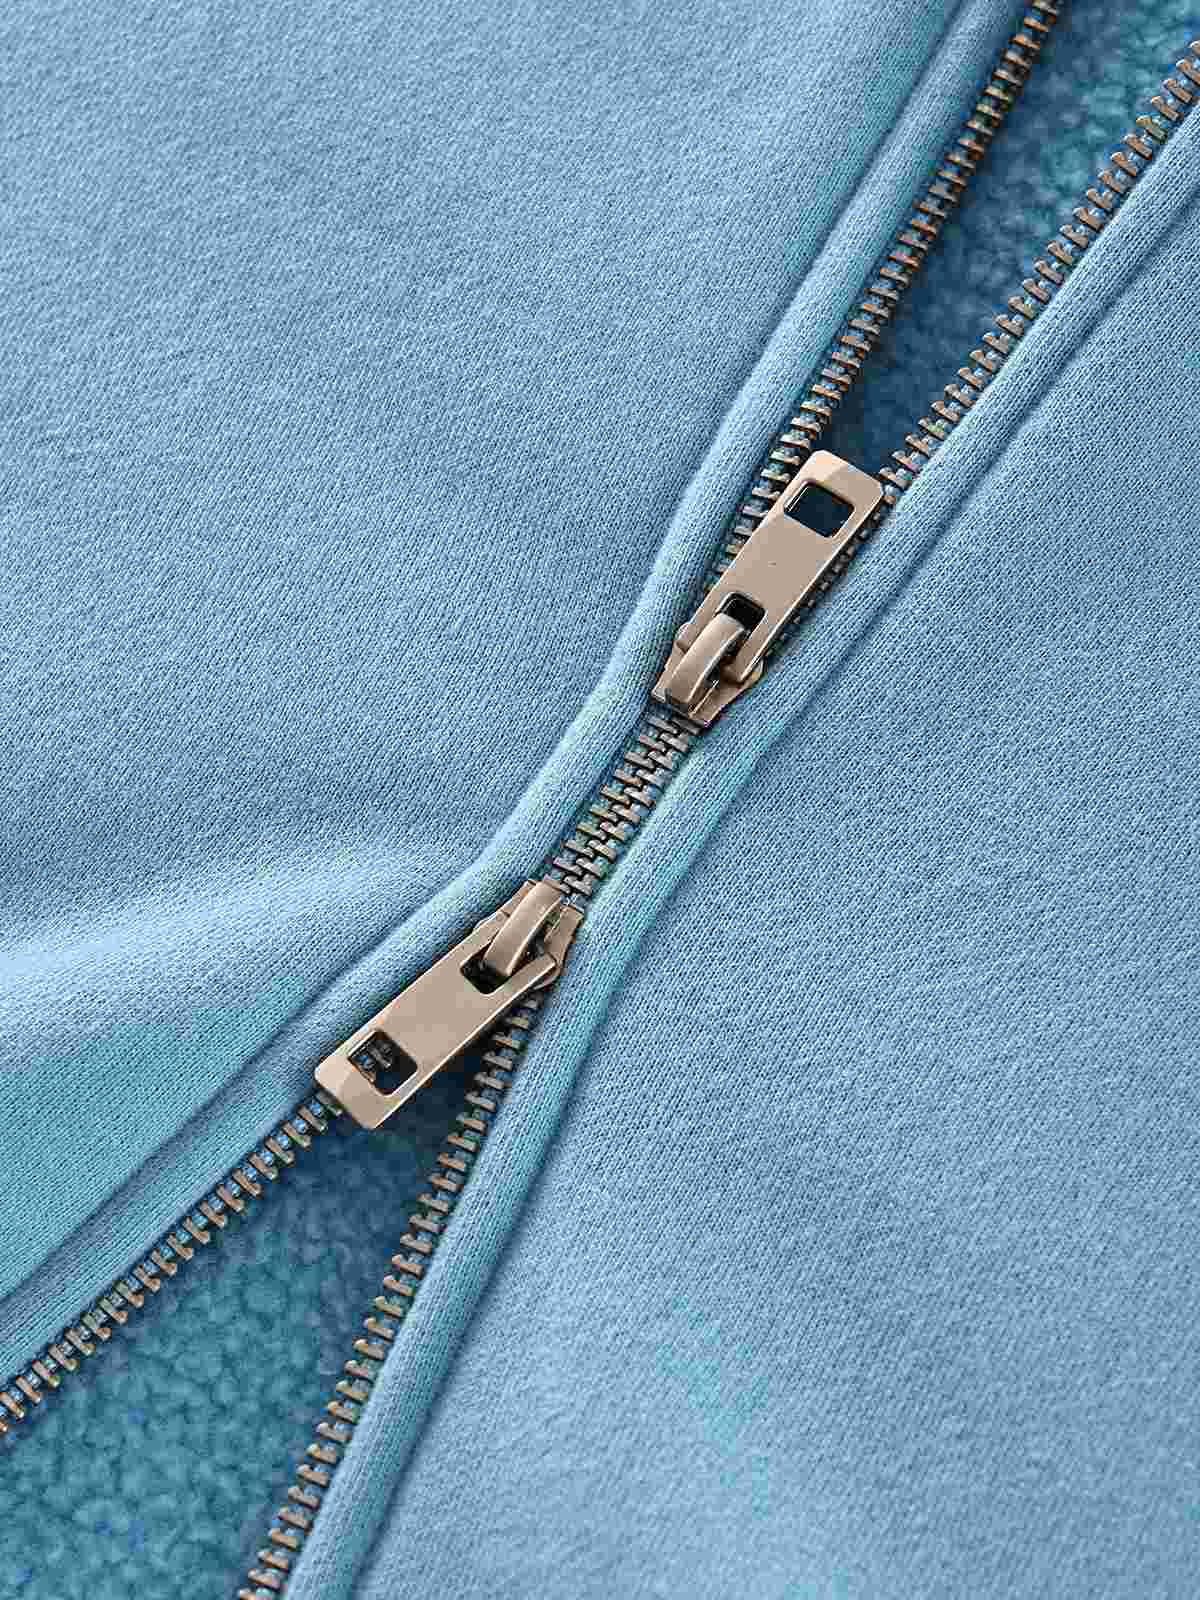 Zip detail of blank zip hoodie